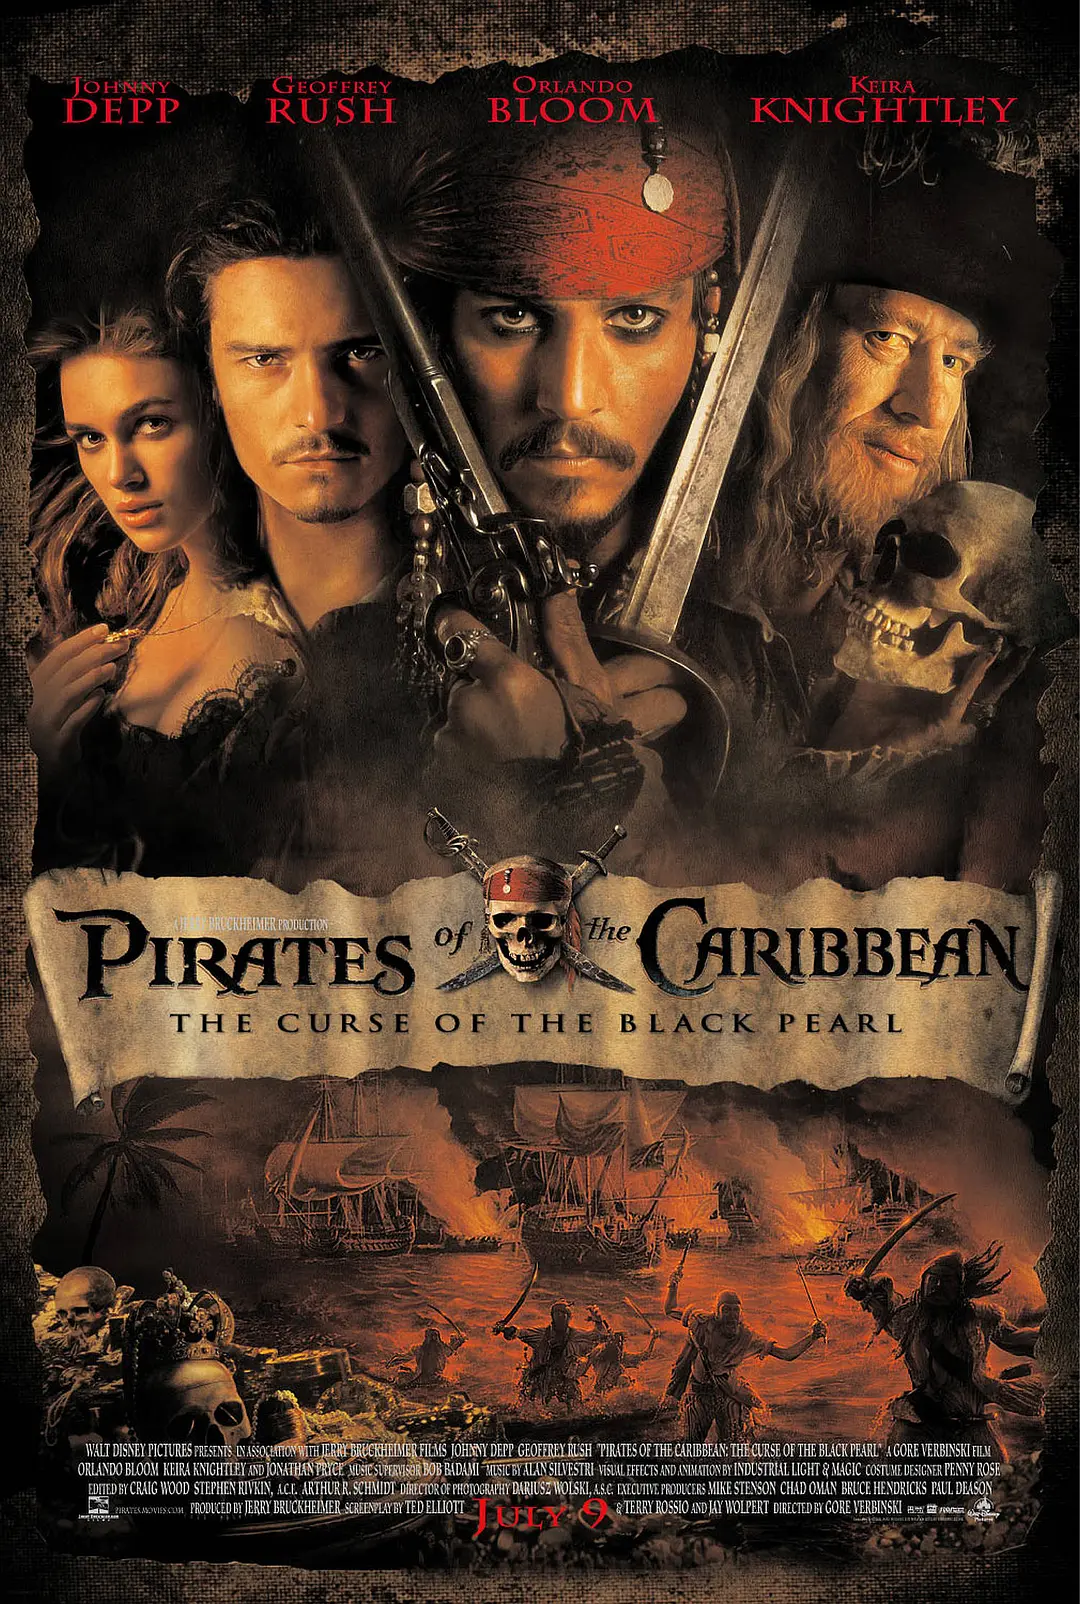 加勒比海盗,加勒比海盗海报图片,加勒比海盗剧照